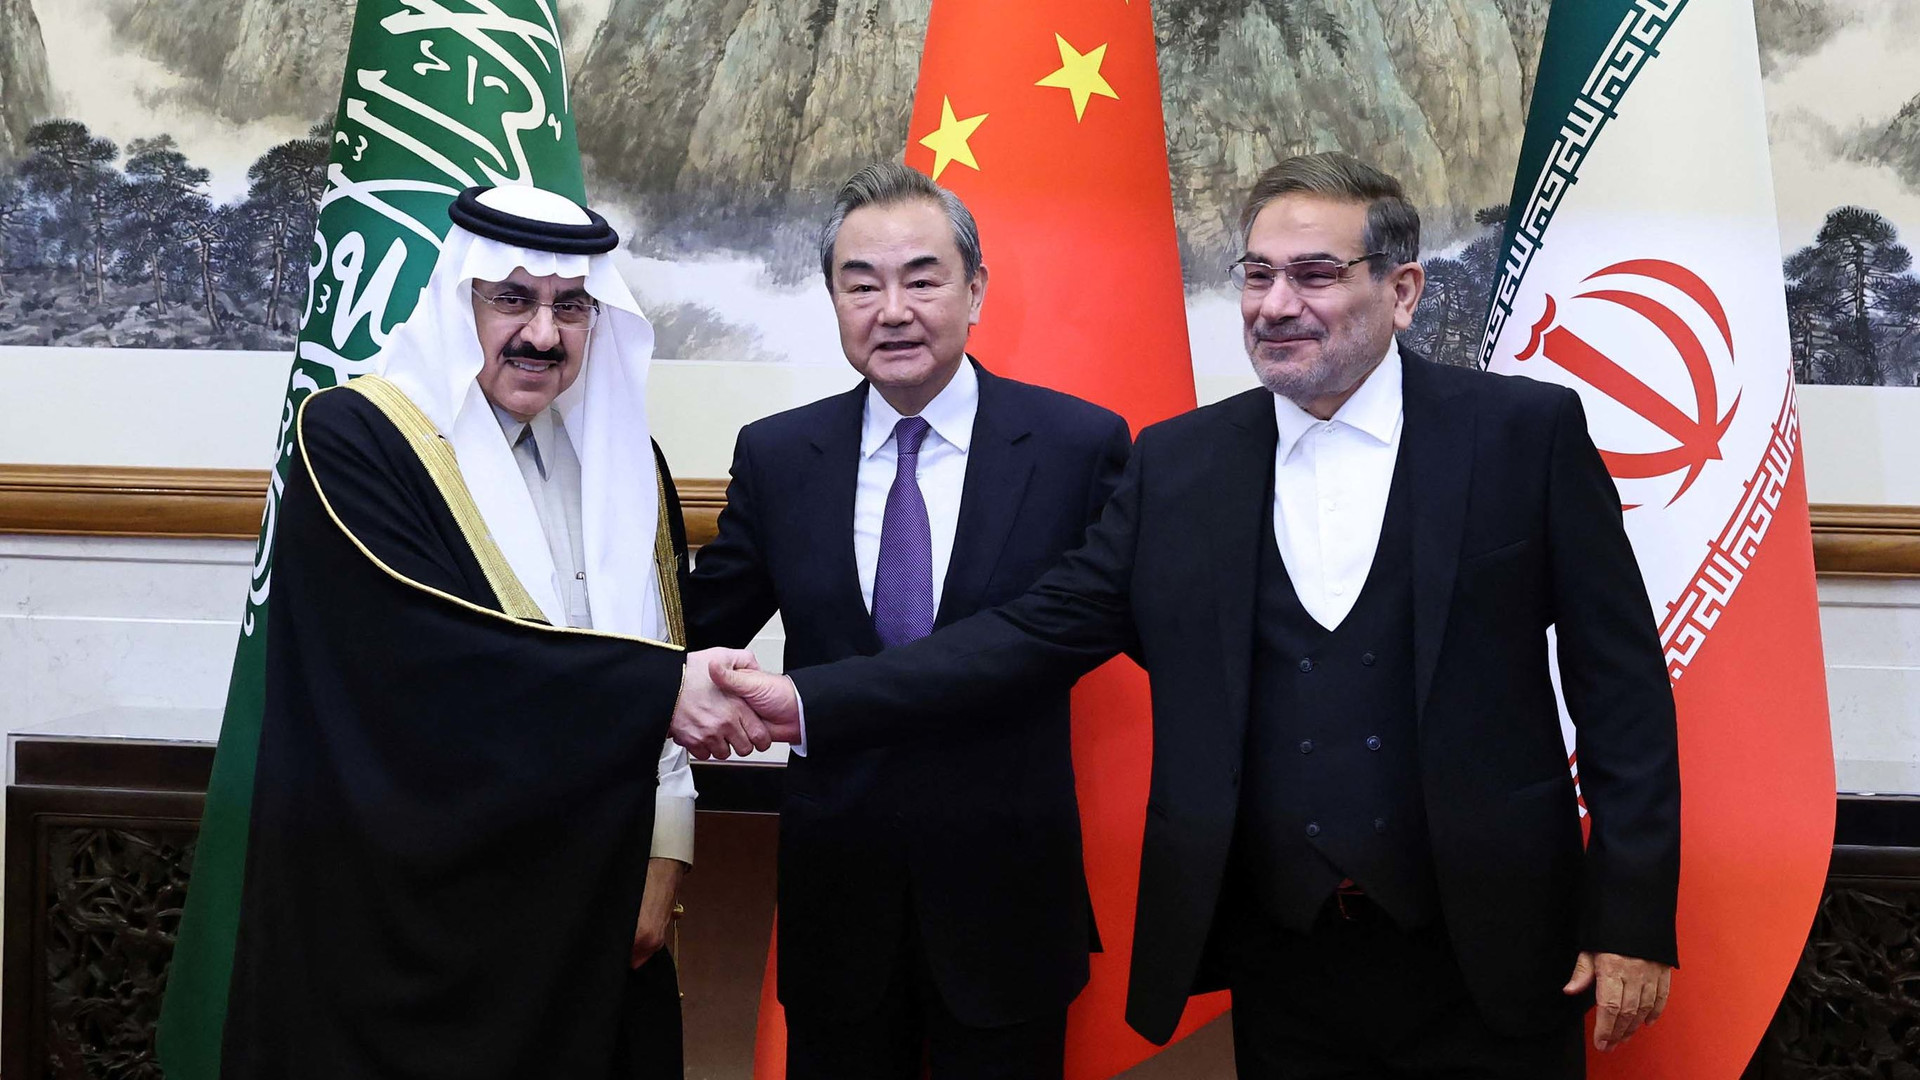 Hai cường quốc dầu khí Ả Rập Xê Út và Iran “bắt tay”: Cục diện năng lượng toàn cầu liệu có thay đổi?